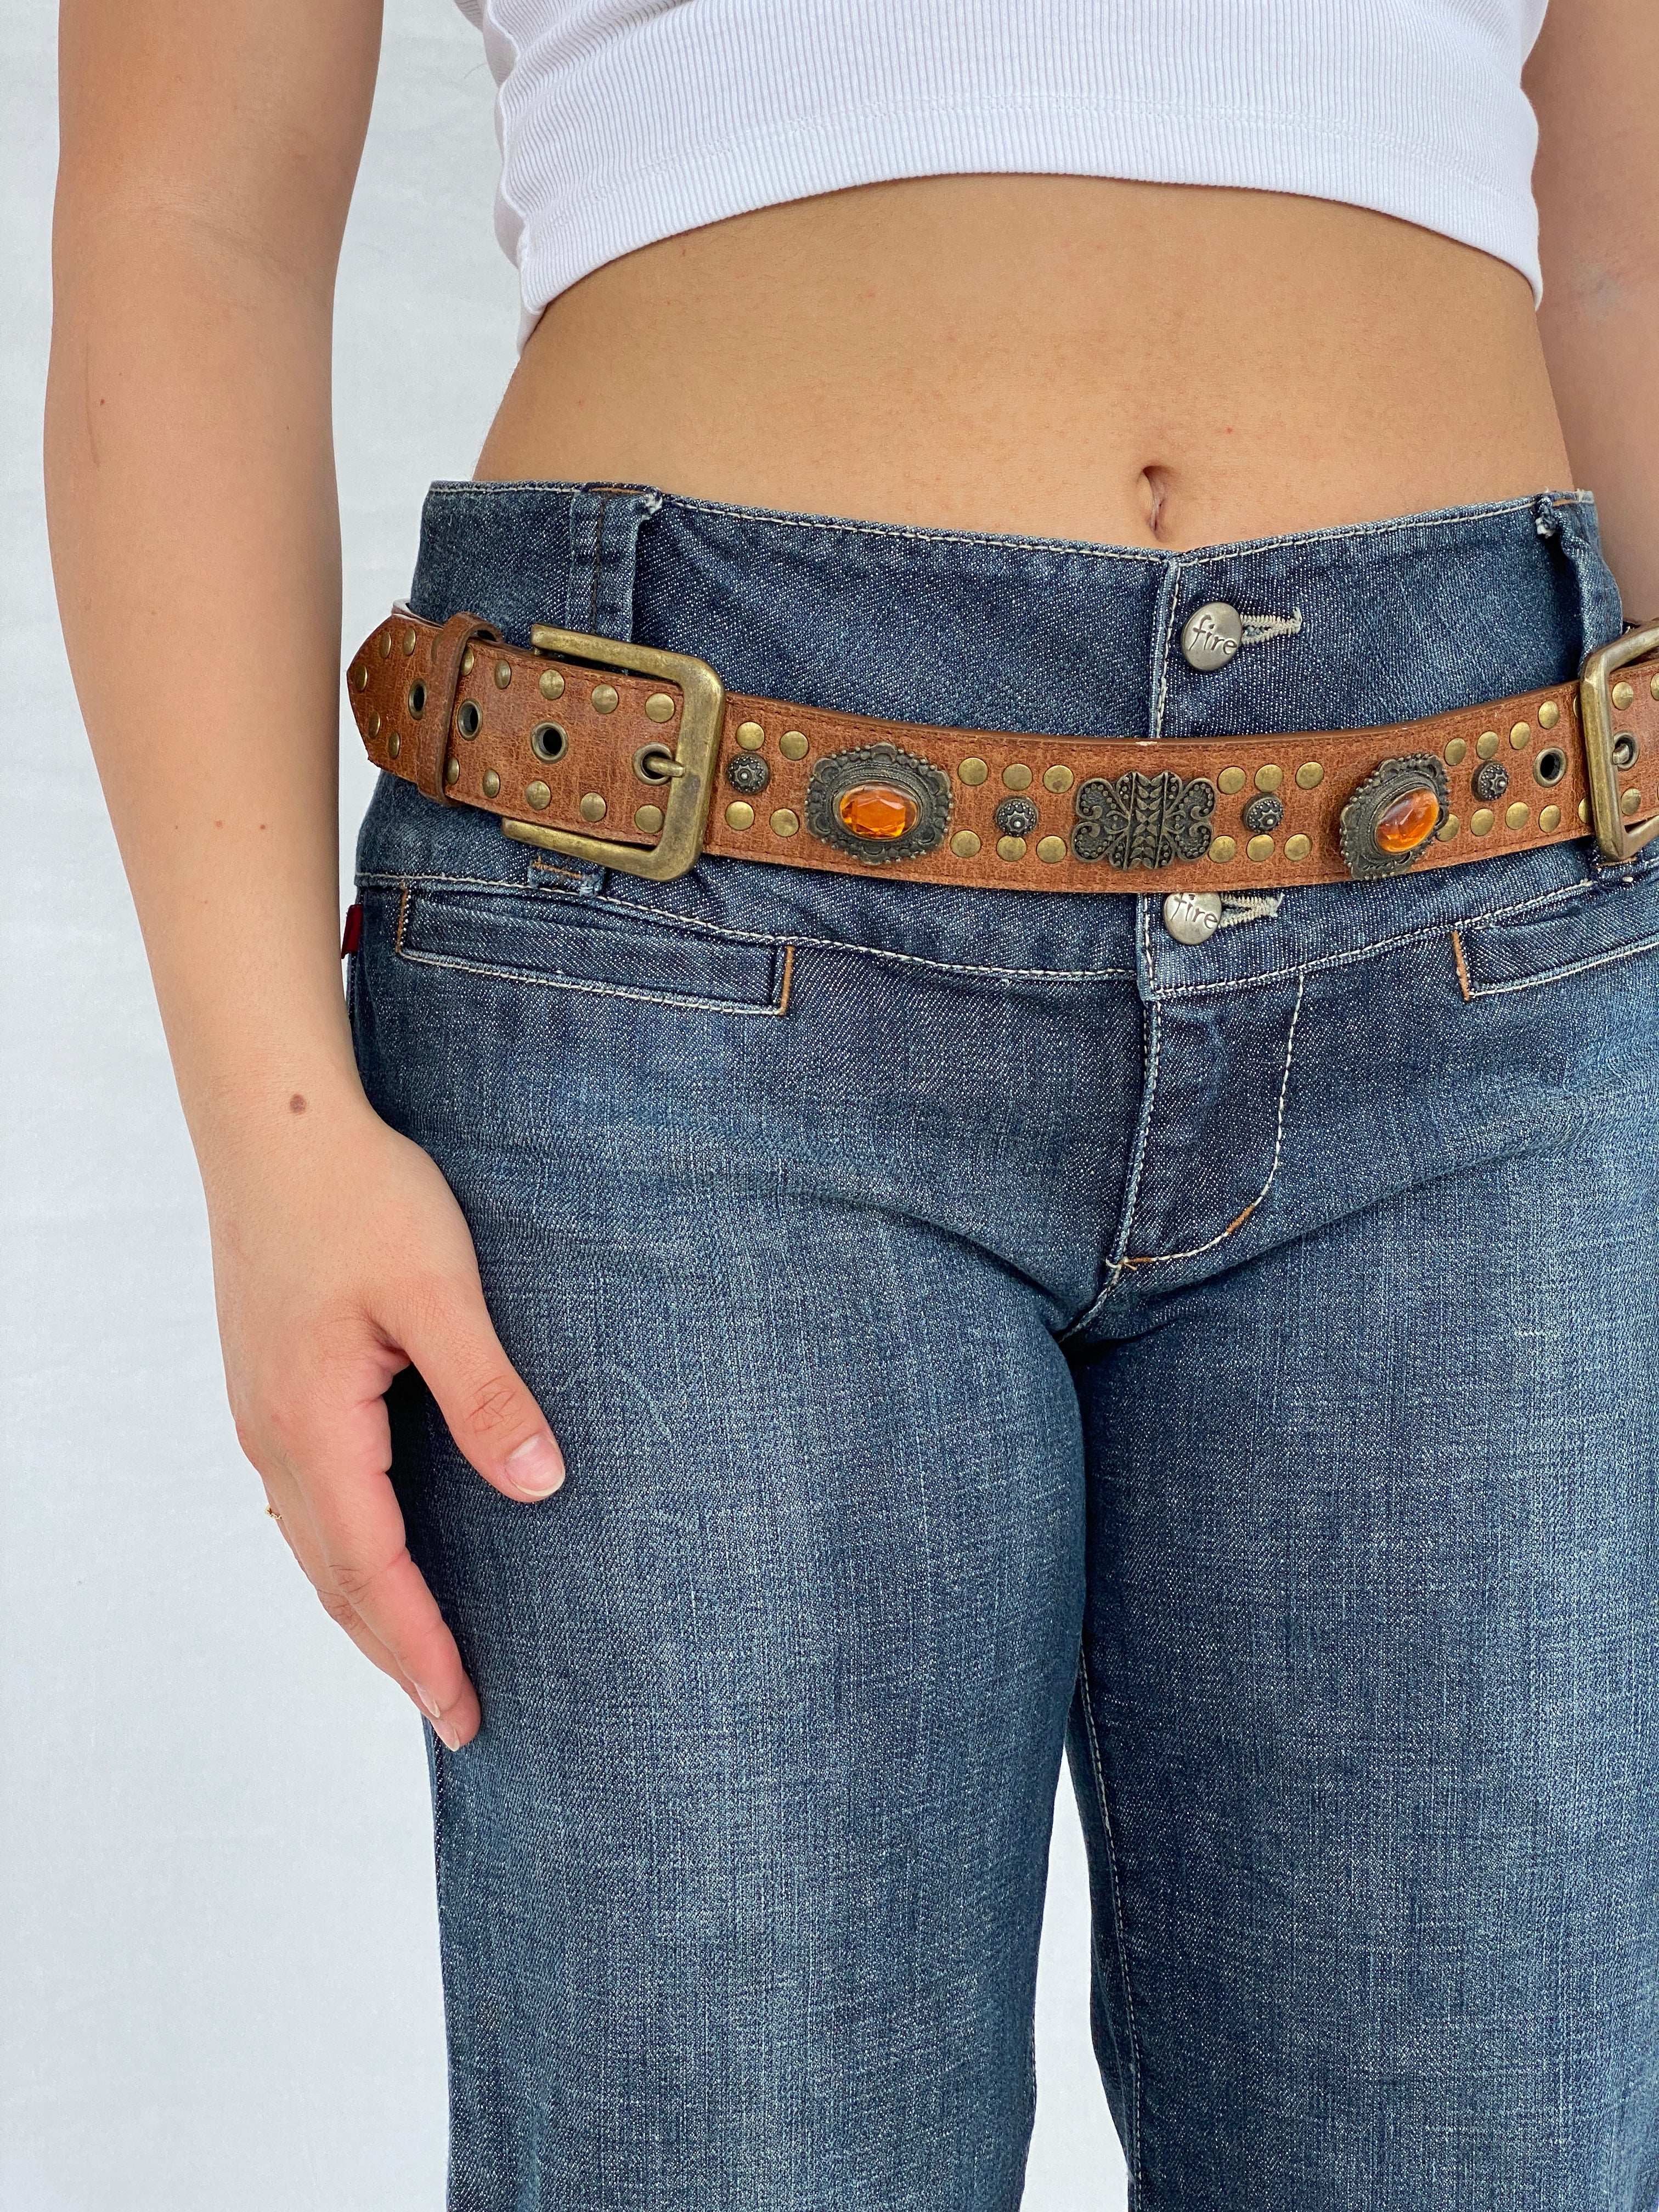 Vintage Western Style Cowboy Embellished Belt - Balagan Vintage 80s, belt, cowboy, Lana, NEW IN